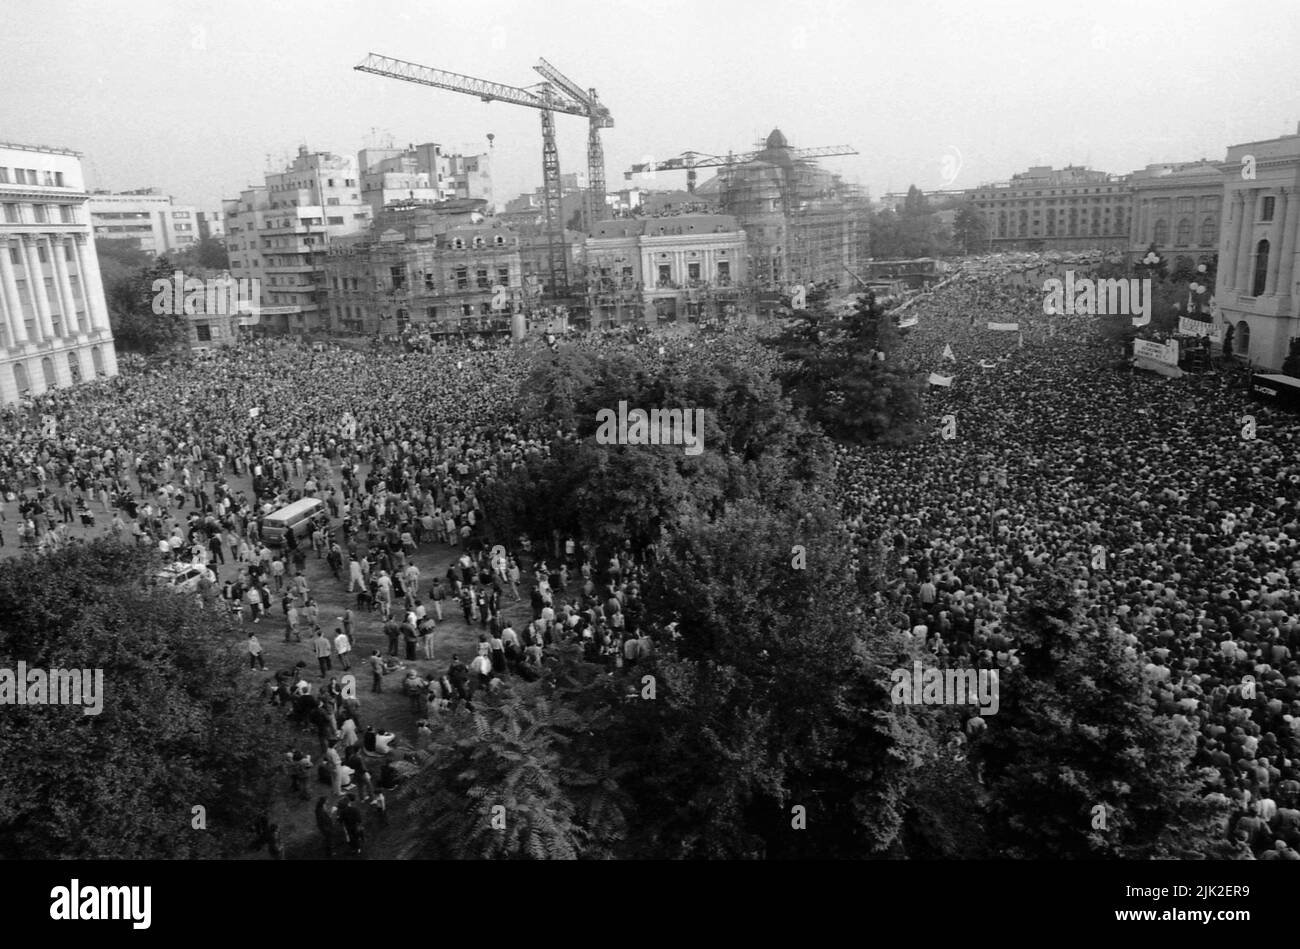 Bucarest, Roumanie, septembre 1992. Rassemblement politique organisé par la Convention démocratique roumaine (CDR) avant les élections présidentielles de 1992. Une foule énorme sur la place de la Révolution. Banque D'Images